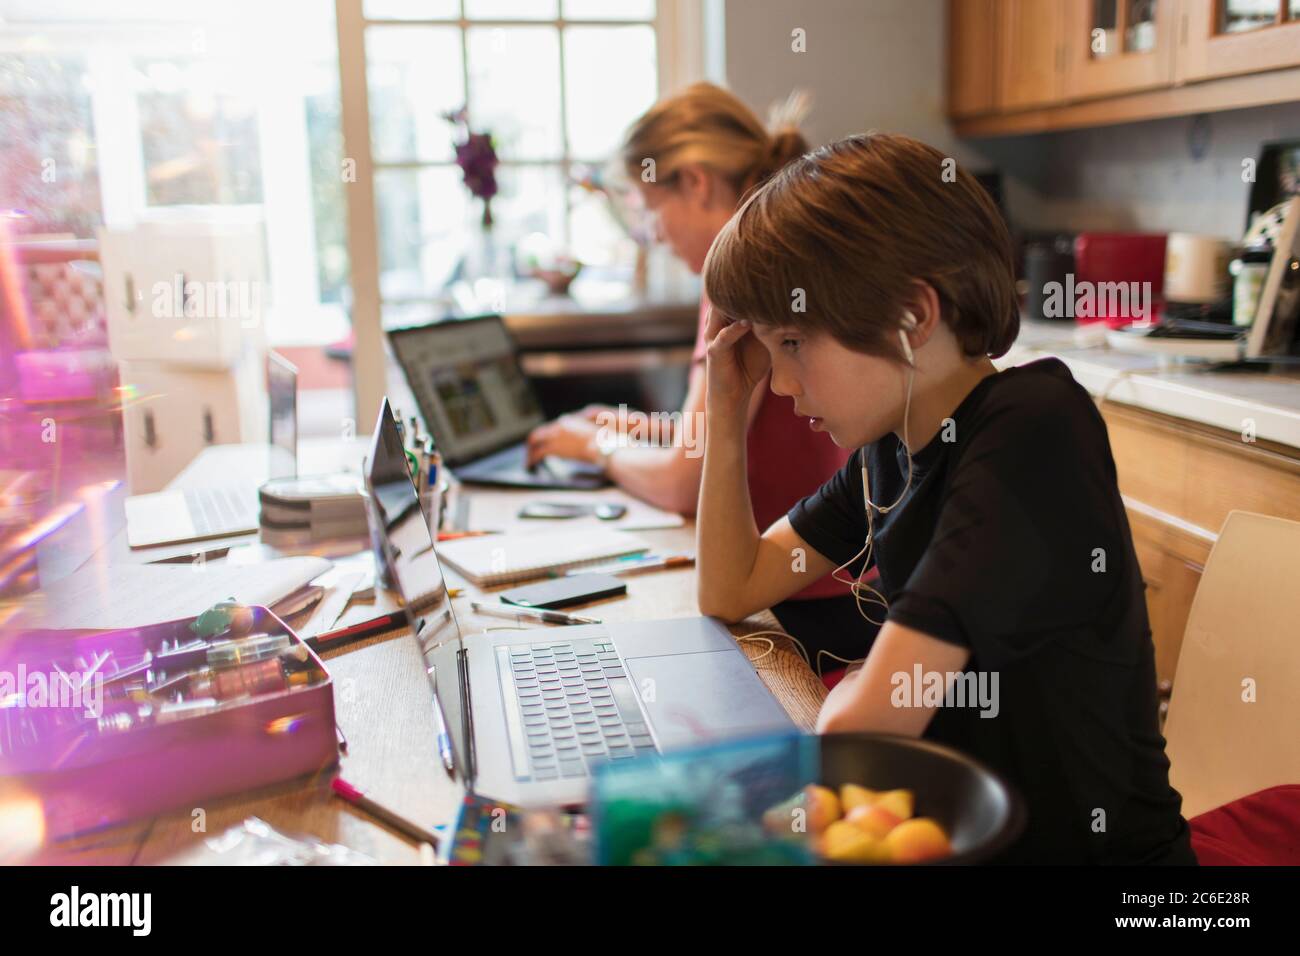 Un garçon qui se concentre sur l'ordinateur portable dans la cuisine Banque D'Images